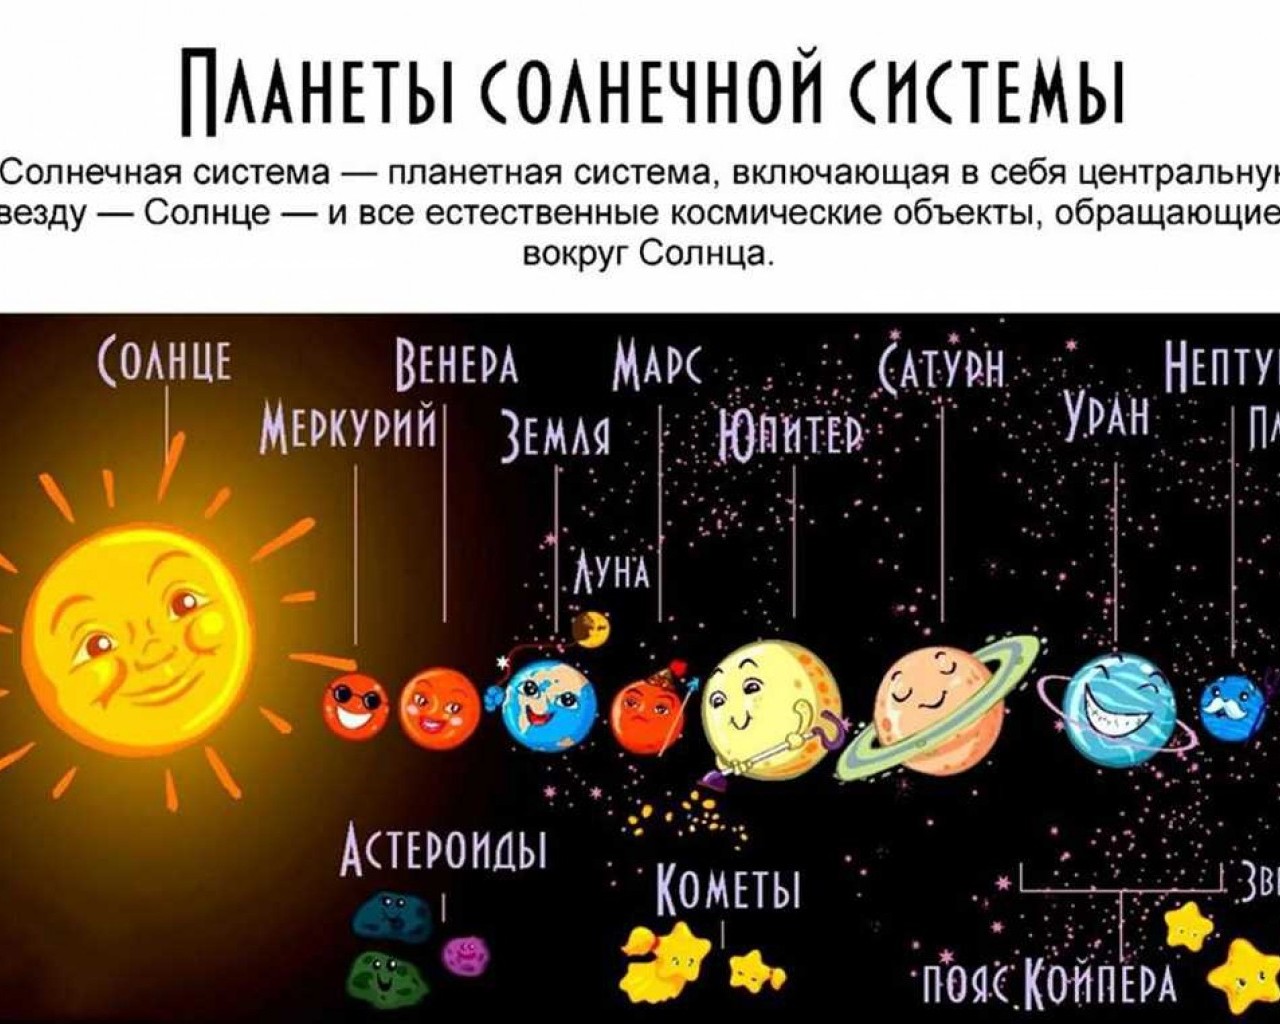 Солнечная система с названиями планет. Солнечная система с названиями планет для детей. Девять планет солнечной системы. Солнечная система с названиями планет по порядку от солнца для детей. Луна это планета солнечной системы